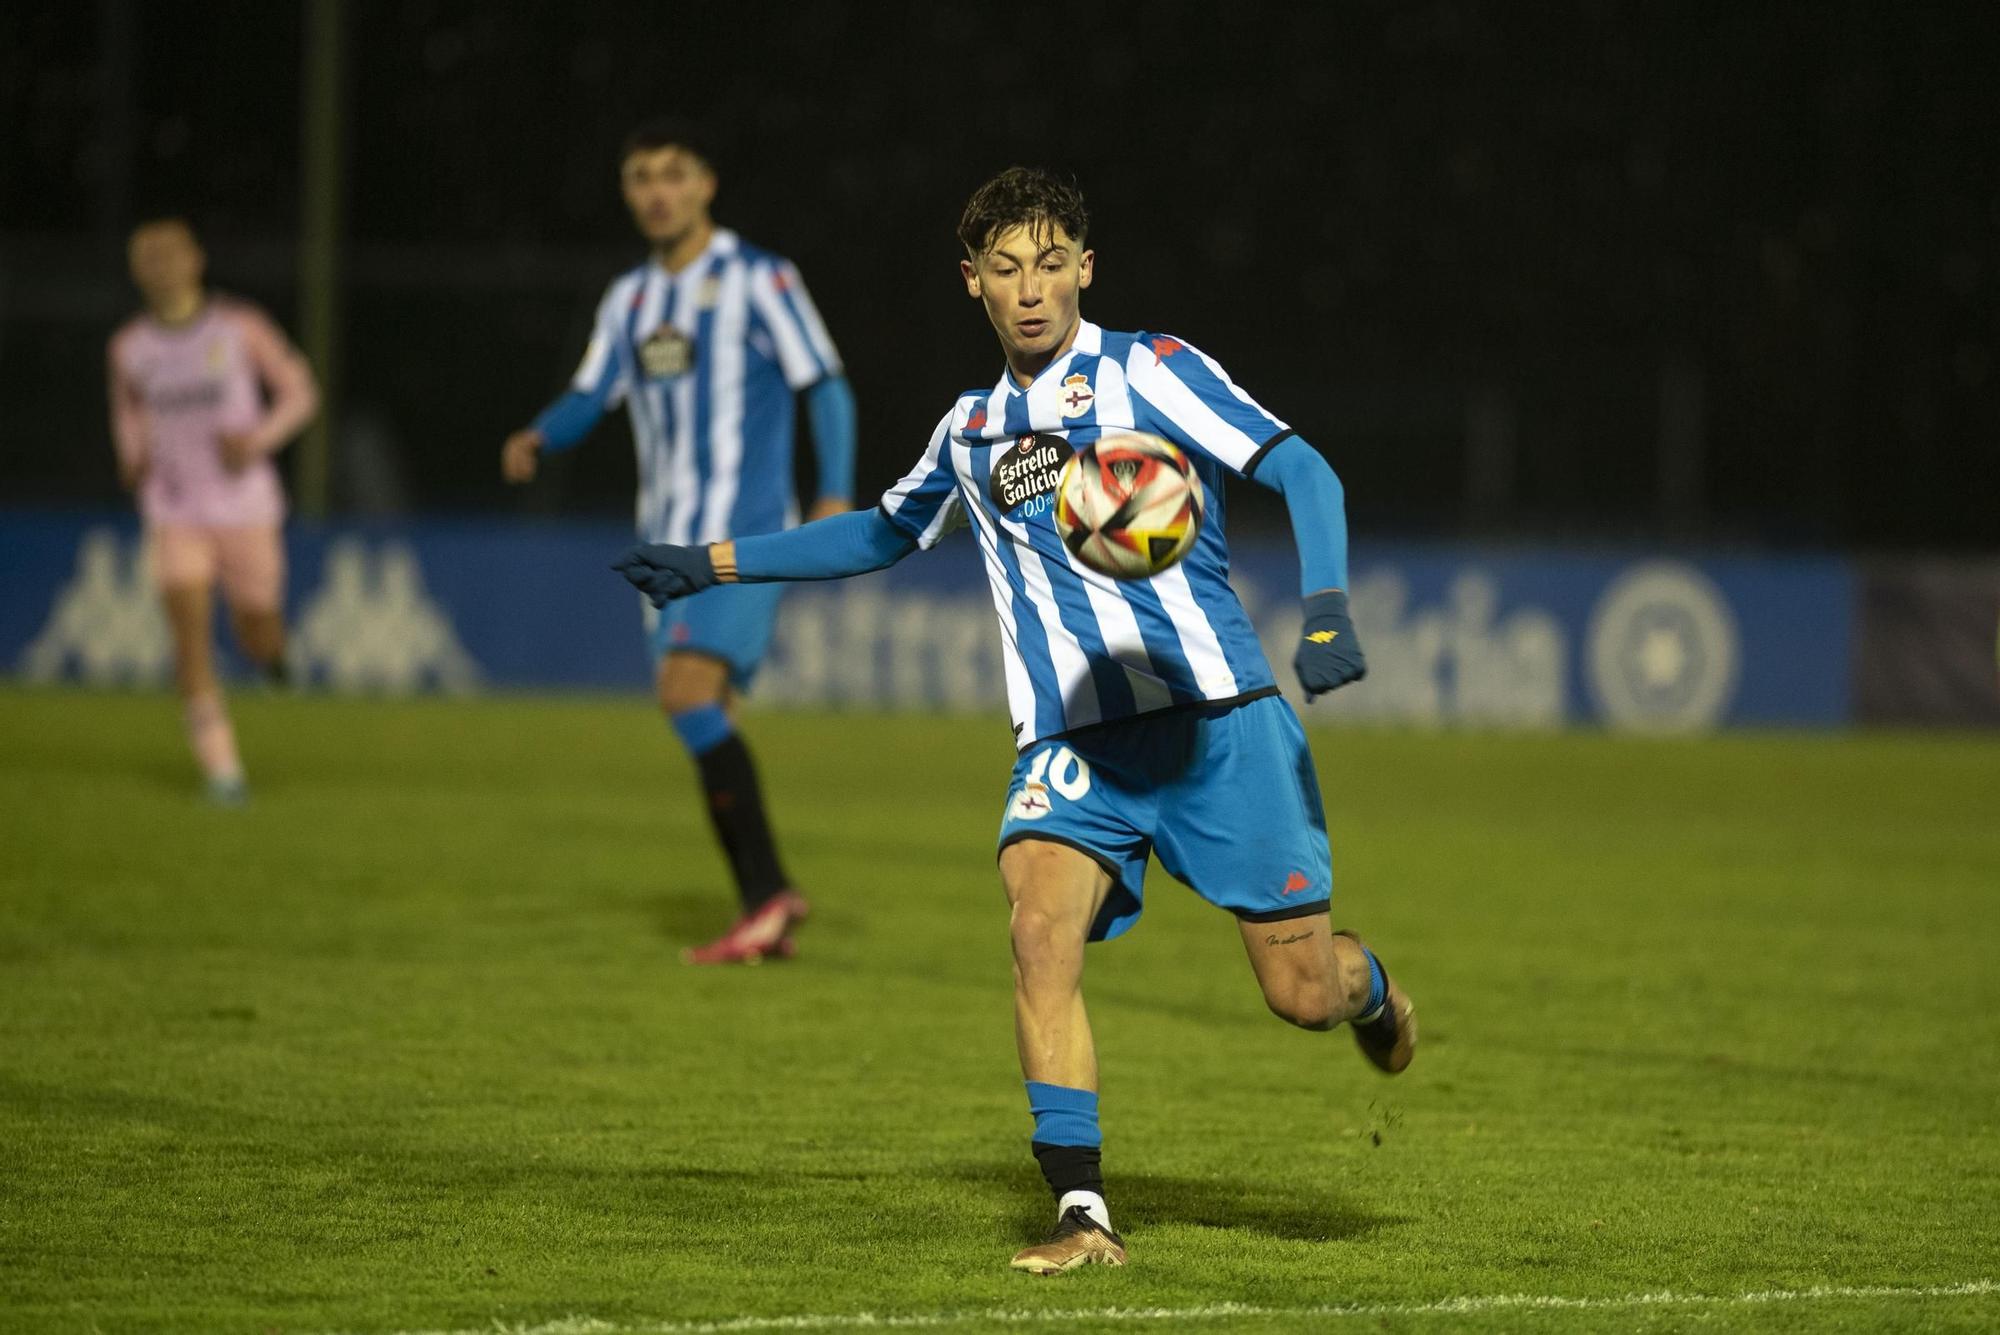 El Fabril empata (1-1) con el Real Oviedo B